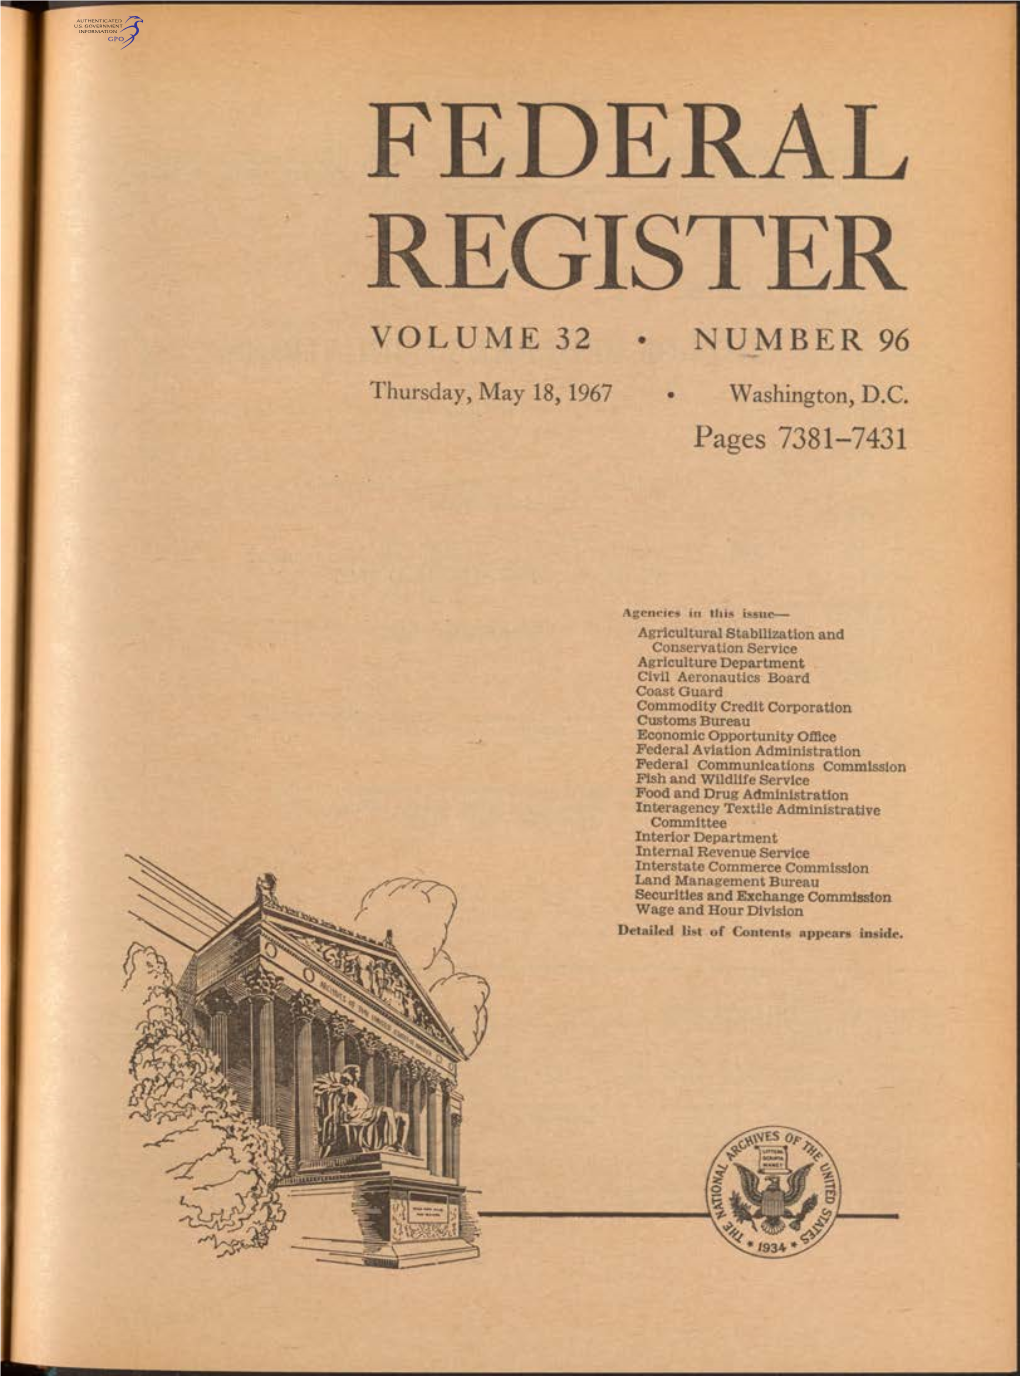 Federal Register Volume 32 • Number 96